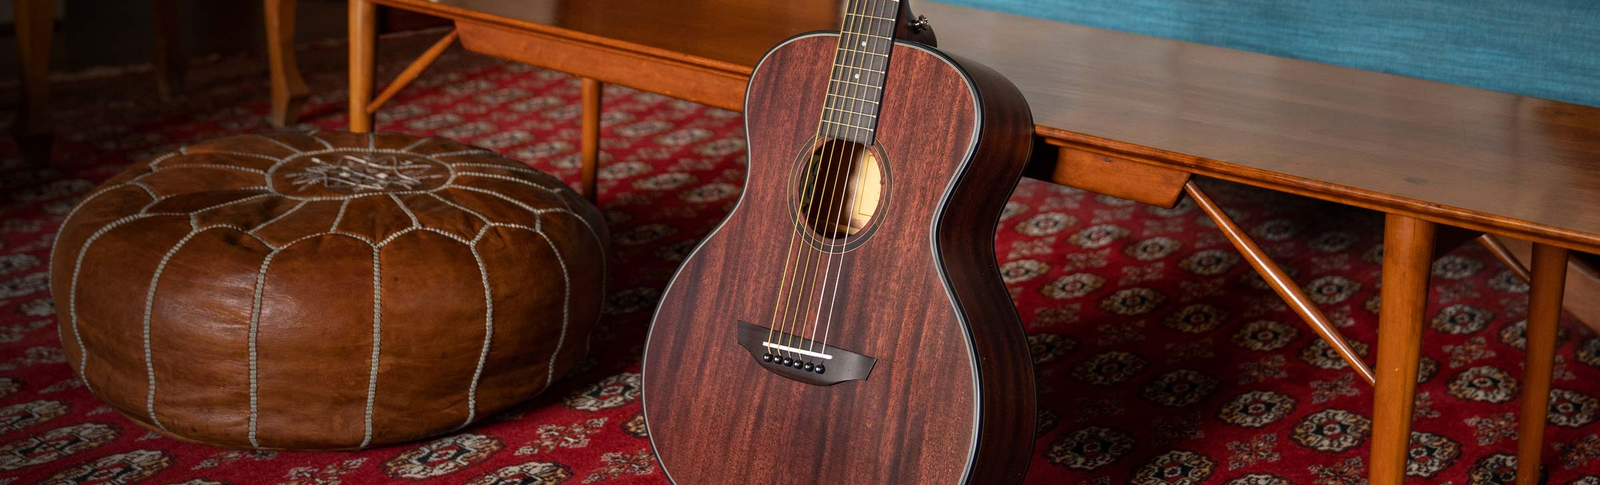 Shop Mini & Travel Acoustic Guitars Online  Orangewood Guitars - Orangewood  Guitars India